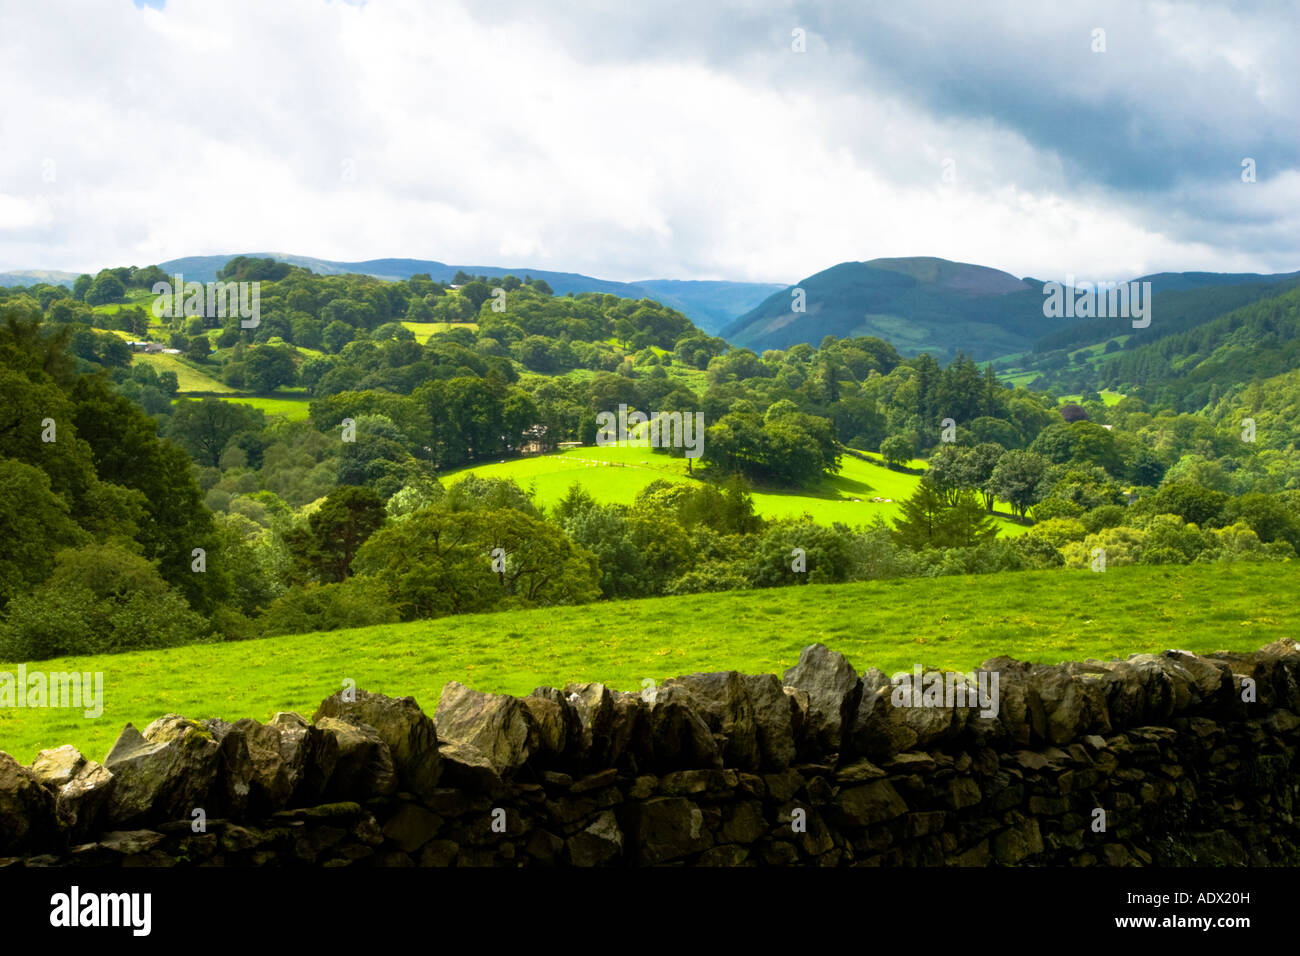 Il verde lussureggiante che si affaccia su campi di Betws-y-coed in Galles del nord che mostra un piccolo bosco ceduo di alberi illuminata dal sole con un cielo nuvoloso. Foto Stock